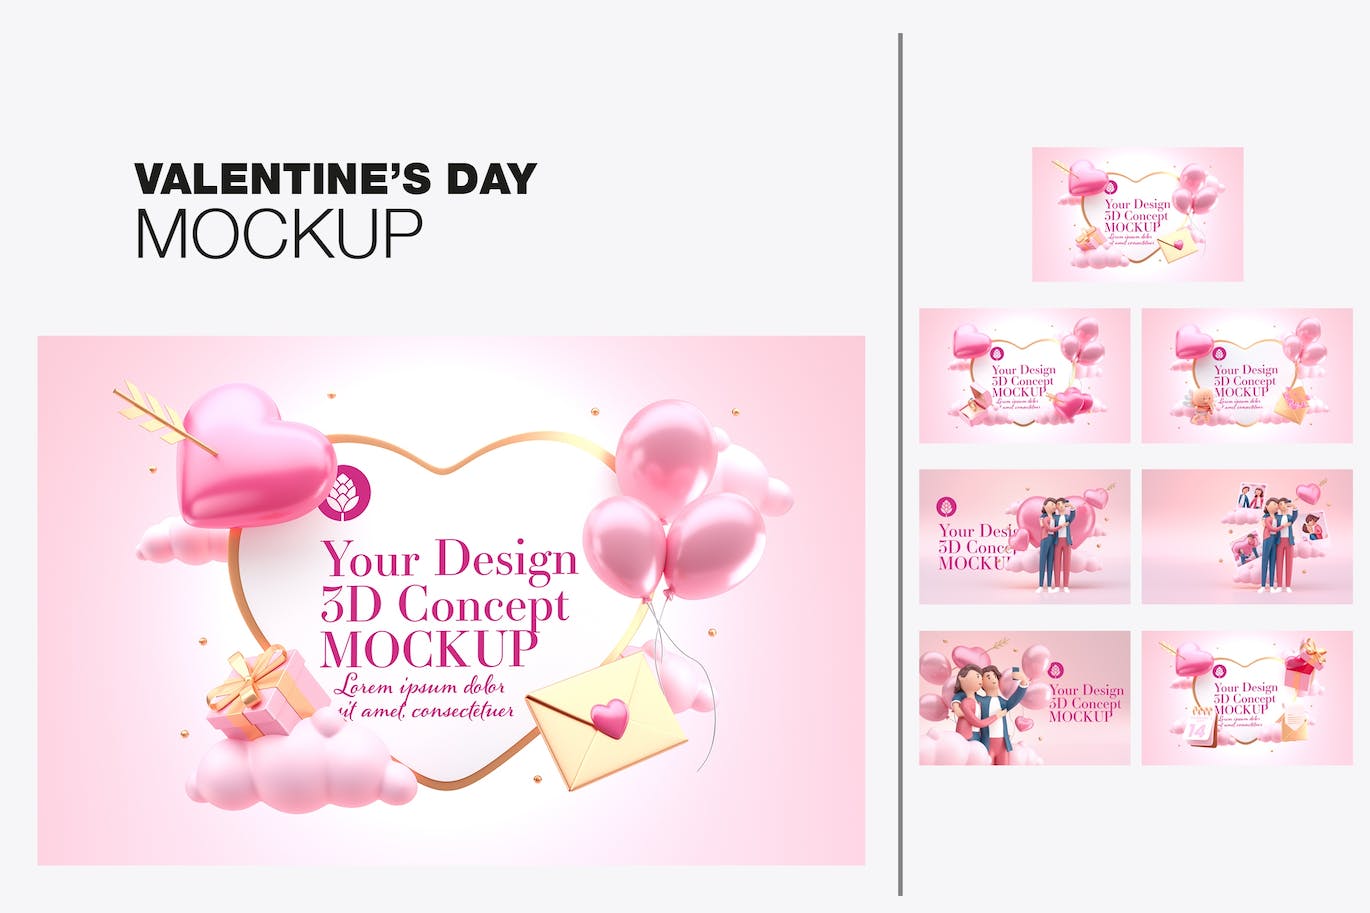 爱心情人节3D概念样机图psd素材 Set Valentine’s Day Concept Mockup 样机素材 第1张